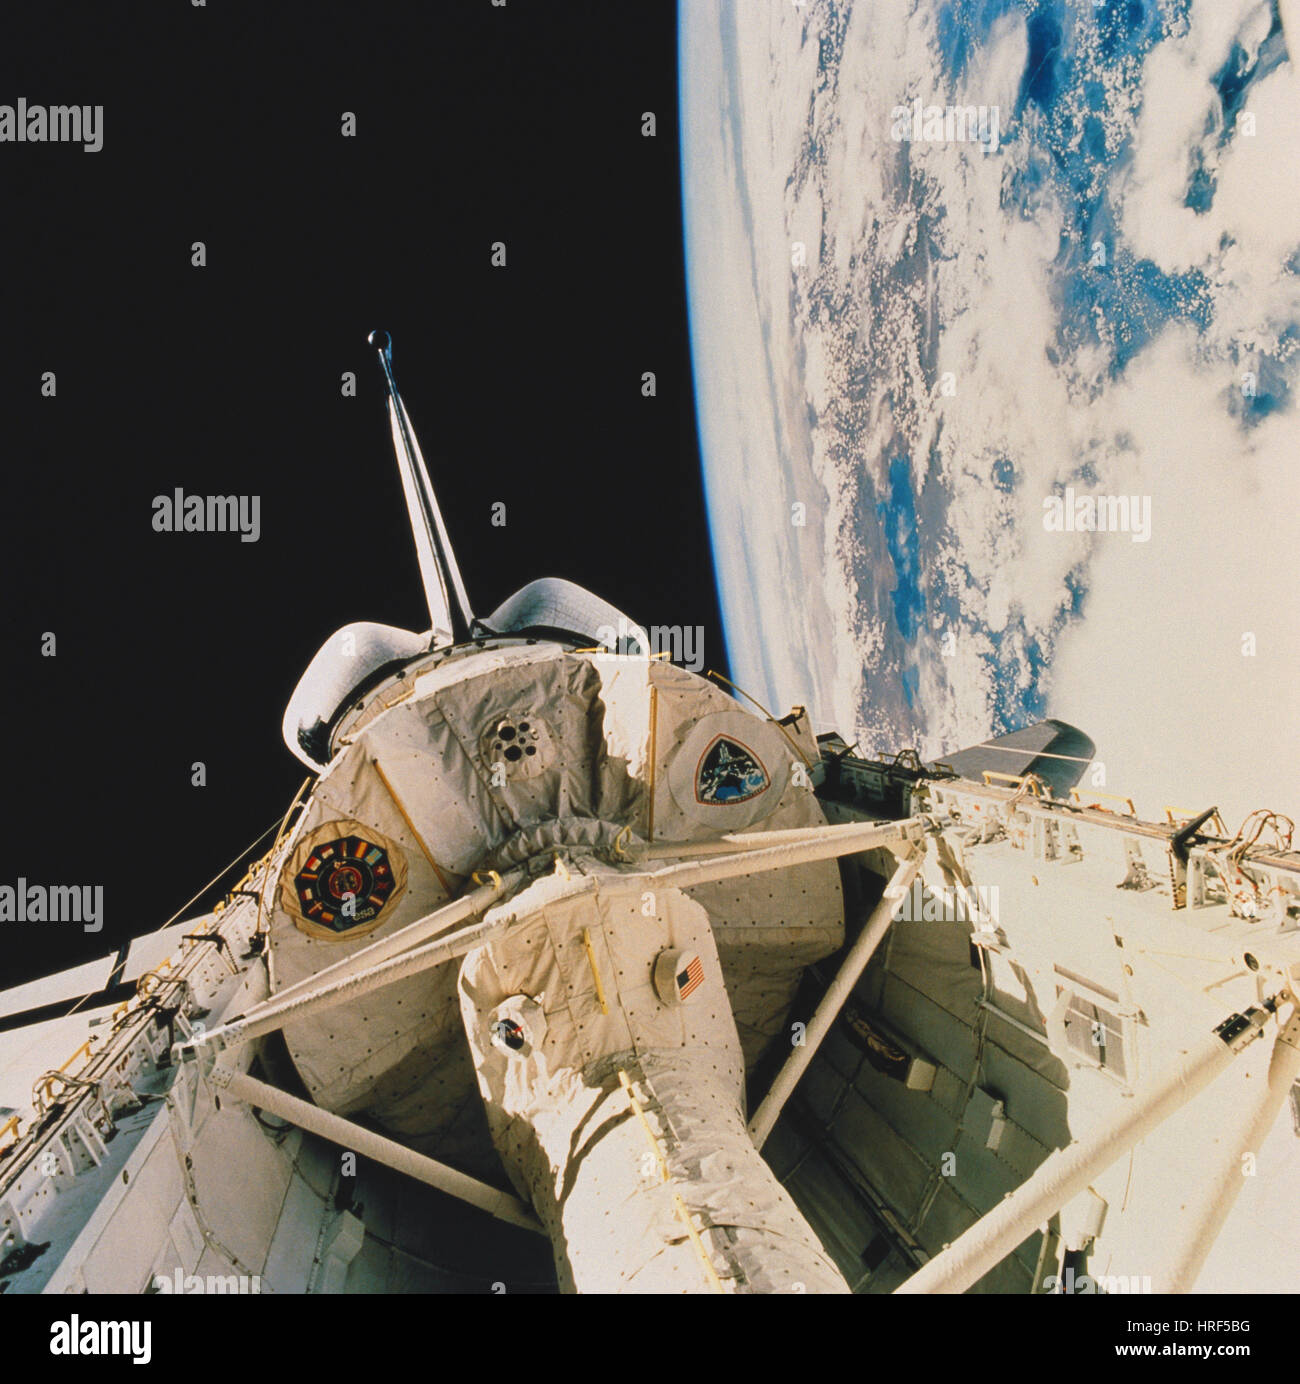 La mission STS-58, la navette spatiale Columbia, 1993 Banque D'Images